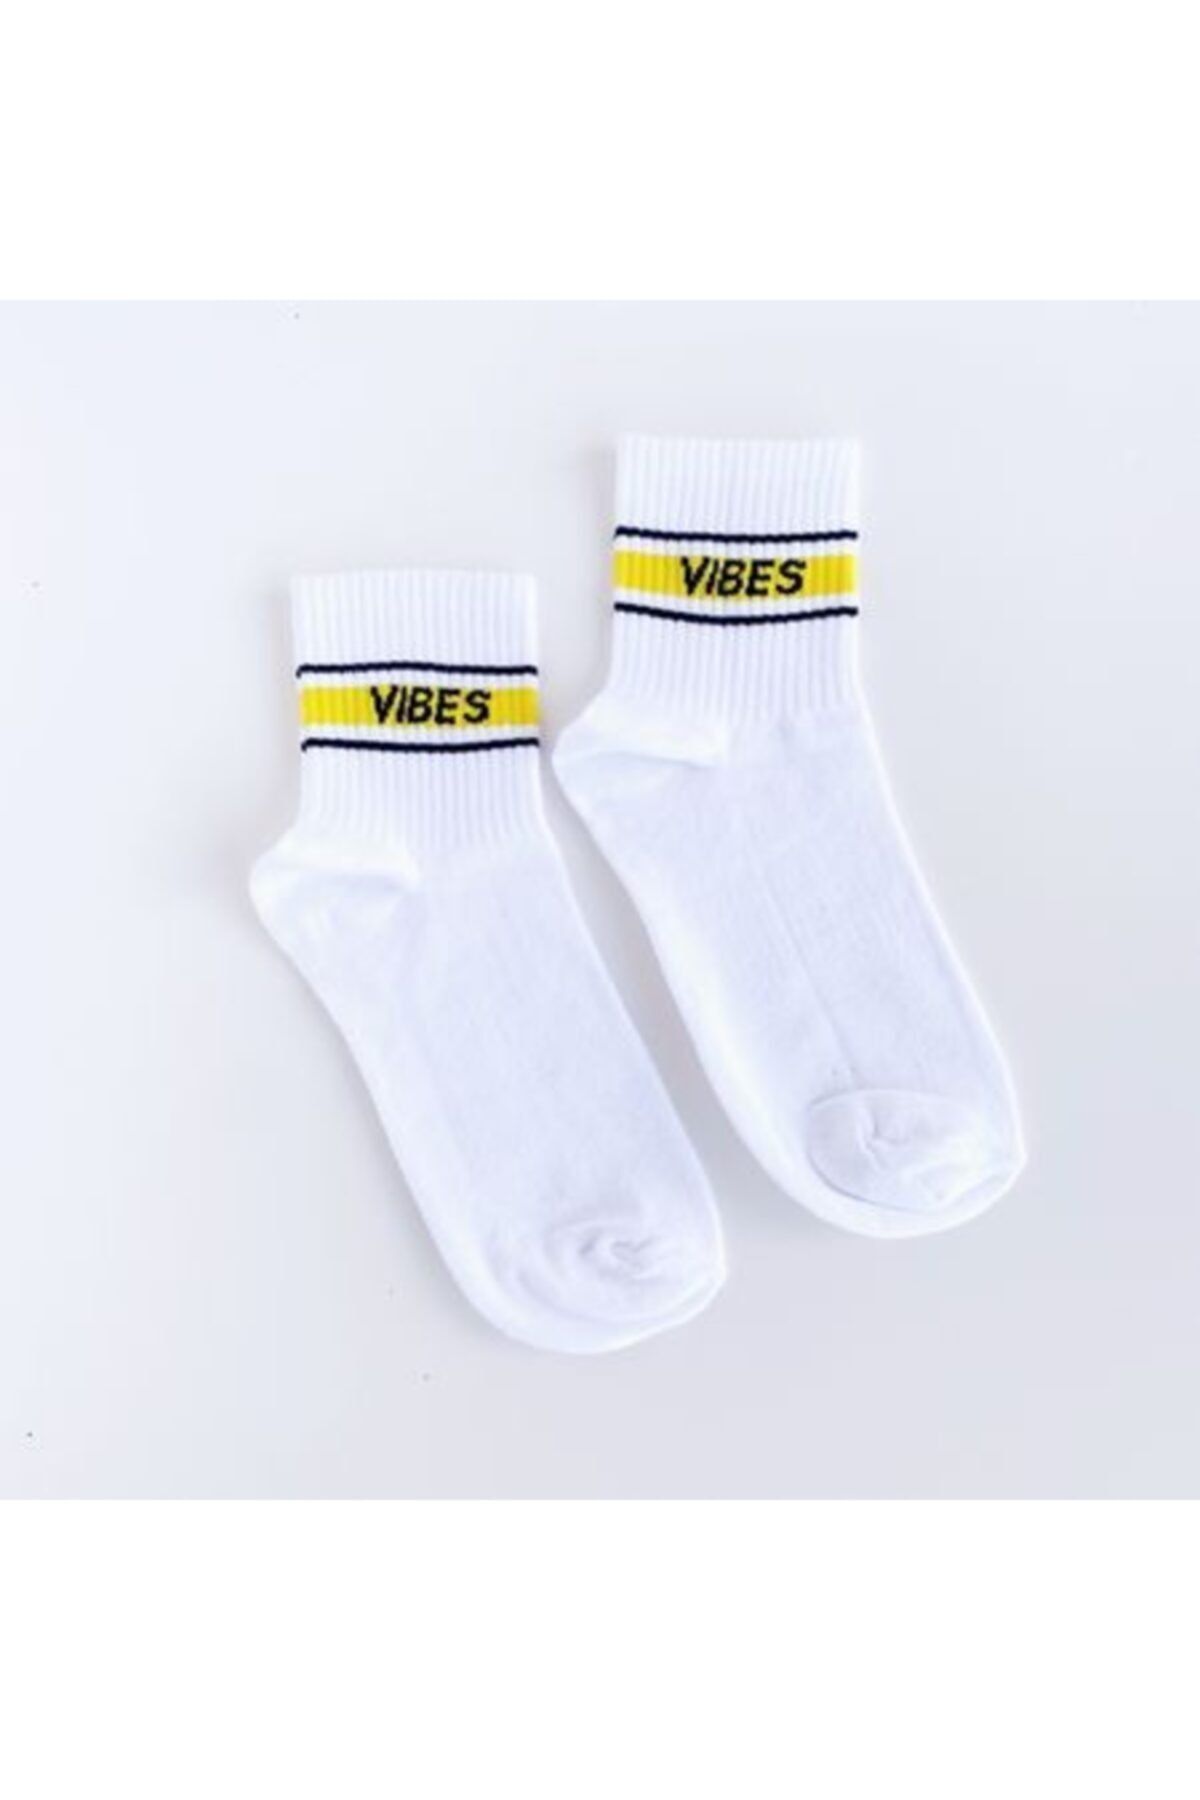 Bikutumutluluk Hediyelik - N466 - Vıbes Sarı Şeritli Beyaz Soket Çorap